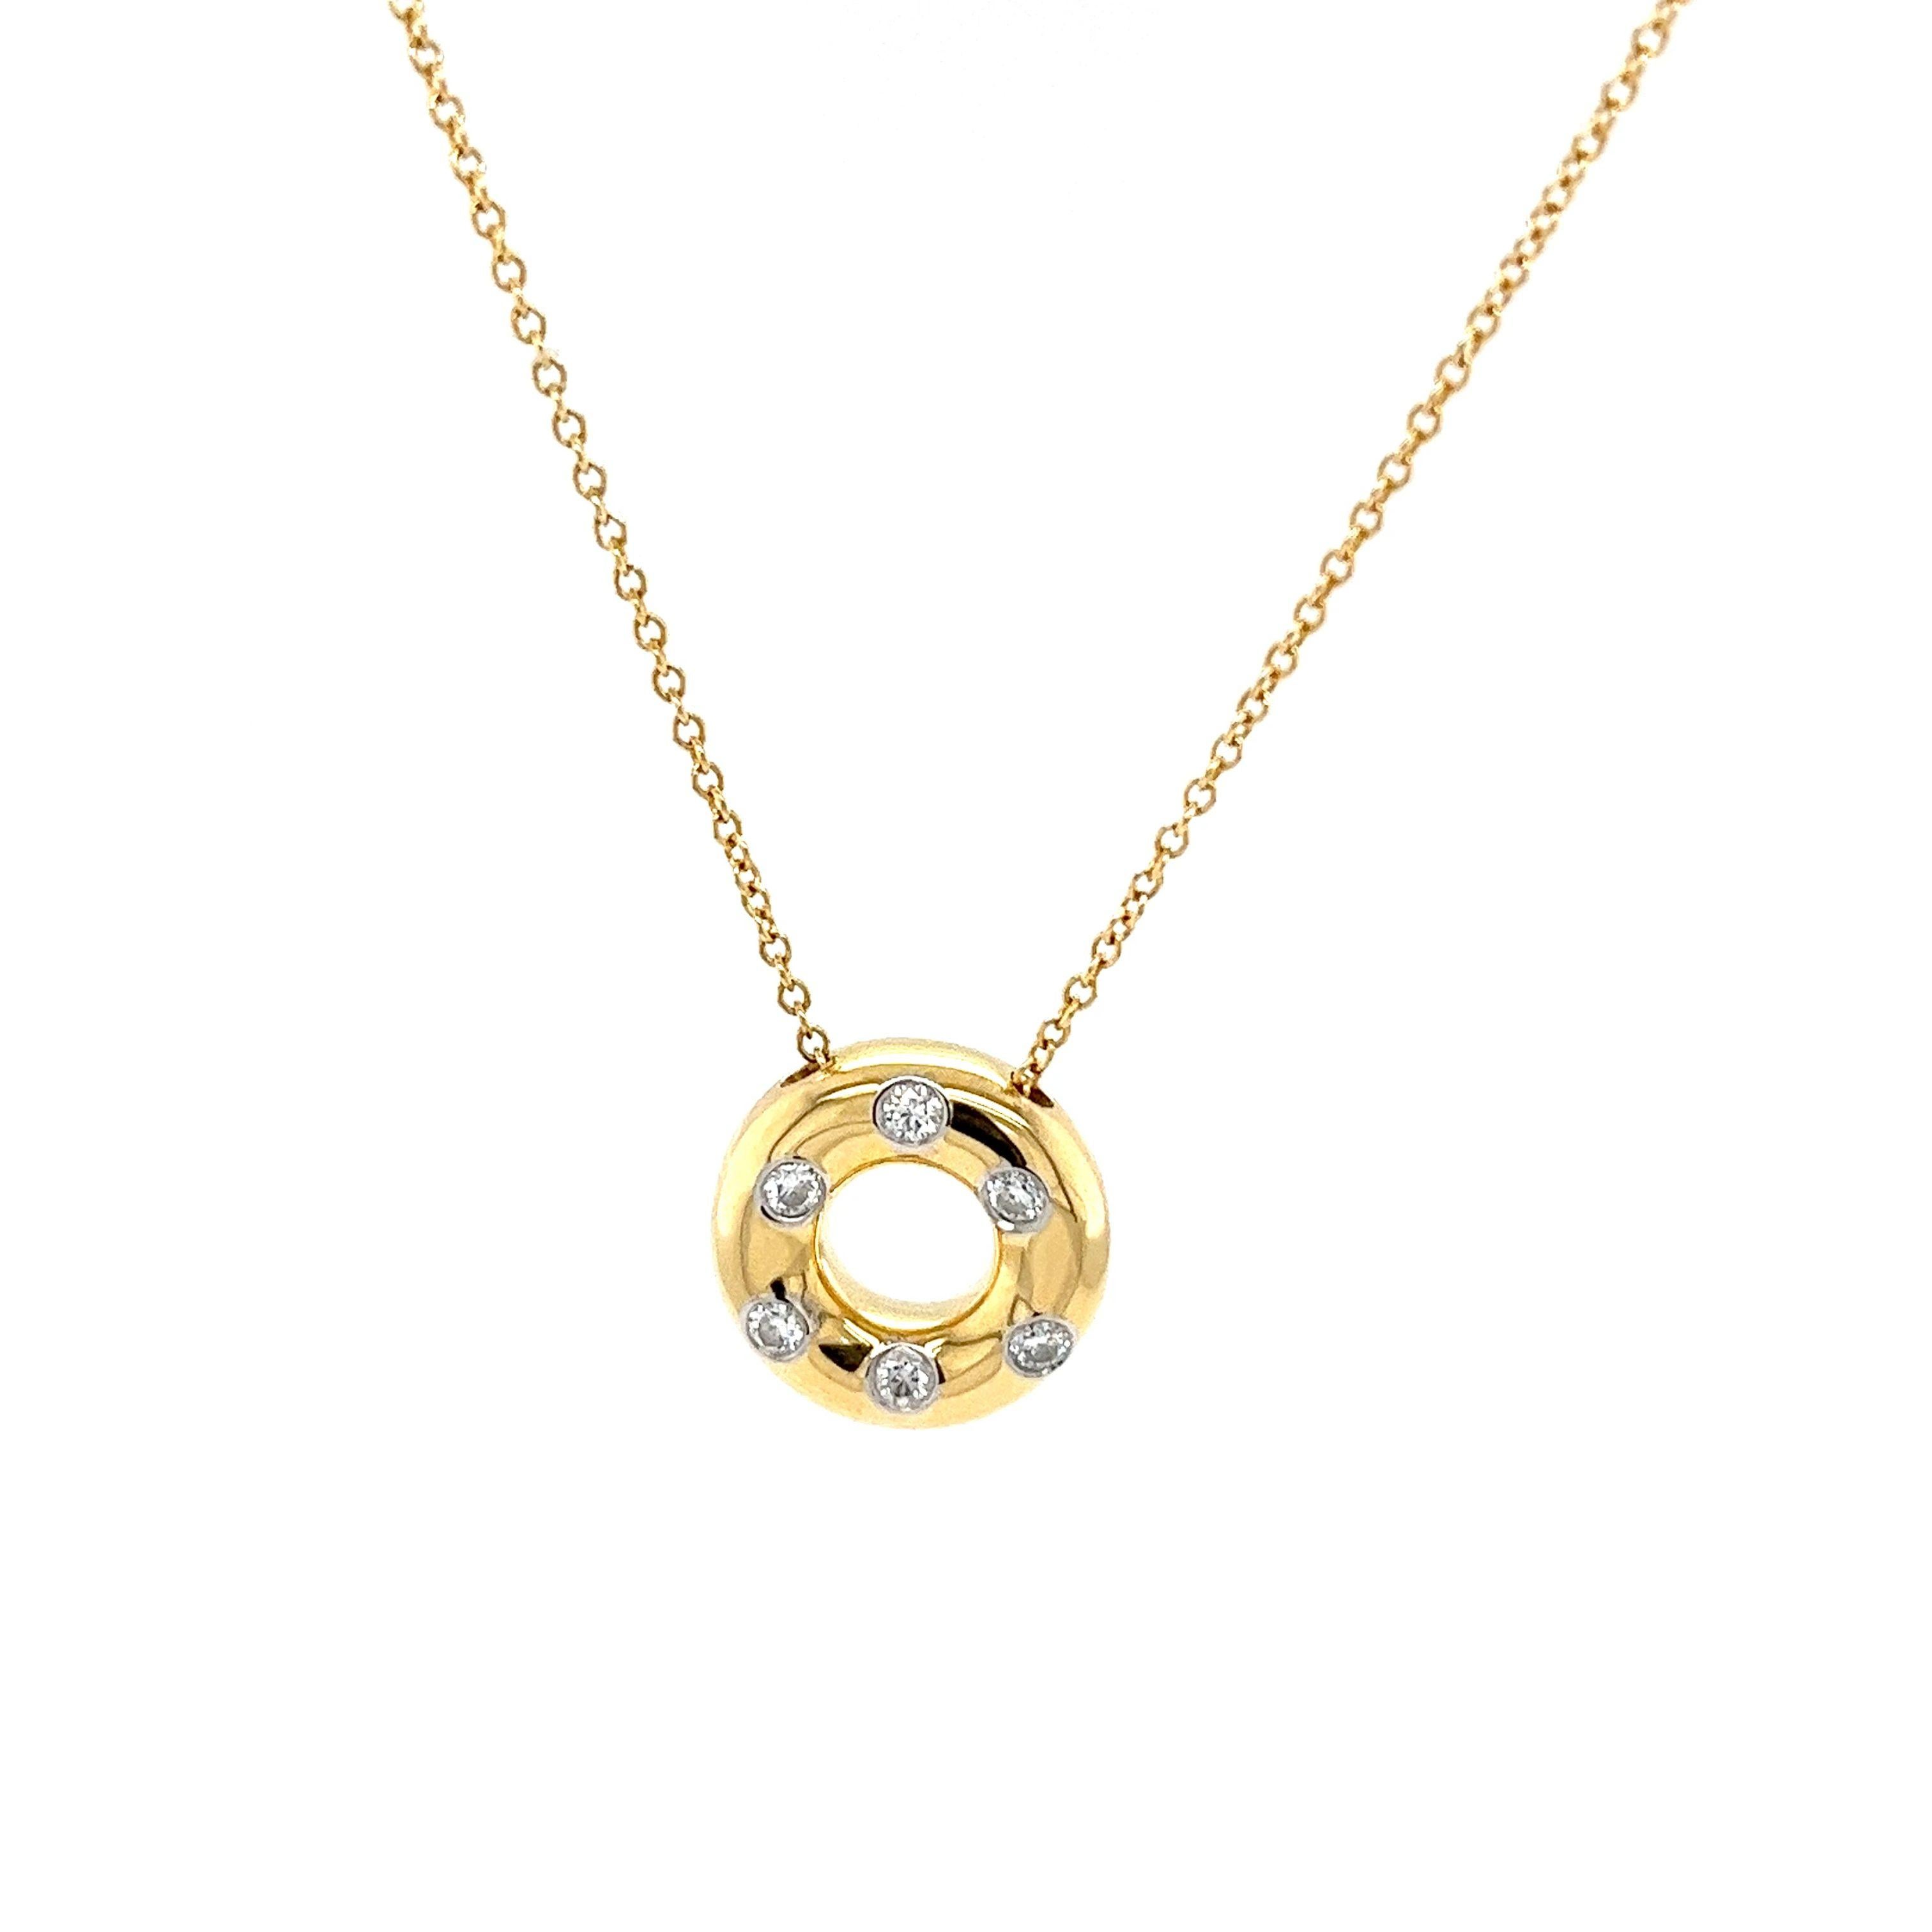 Die Tiffany & Co. Der mit sechs runden Diamanten besetzte Diamantanhänger Étoile ist ein schillerndes und raffiniertes Schmuckstück aus 18 Karat Gelbgold und Platin. Das zeitlose Design dieses Anhängers eignet sich für verschiedene Anlässe, vom